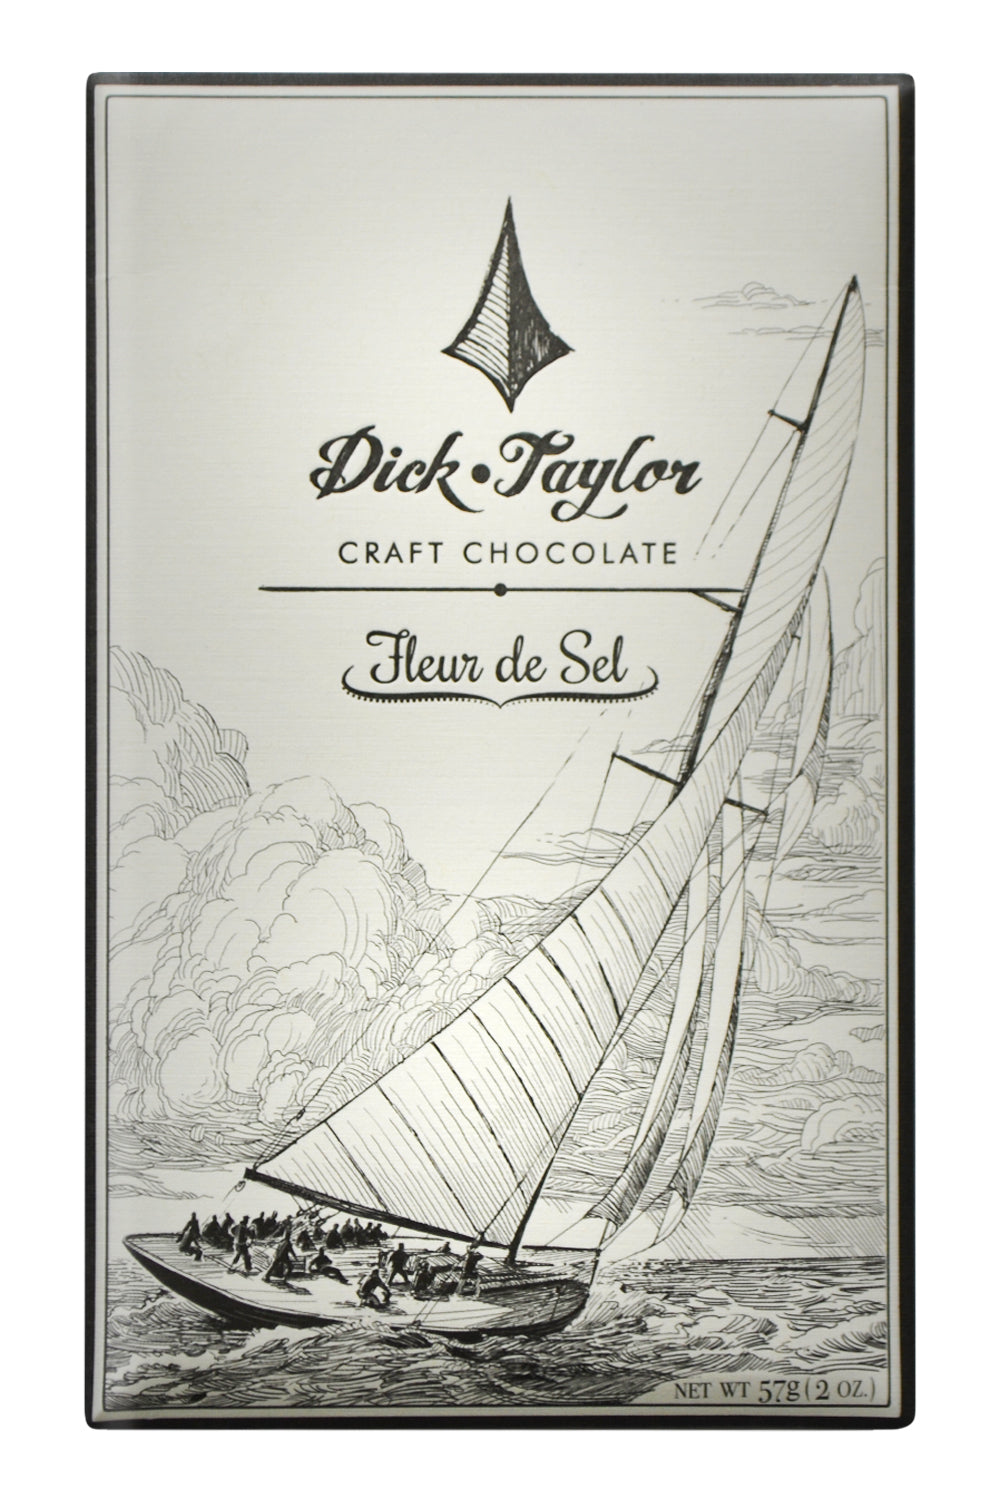 Dick Taylor Dark Chocolate - Fleur de Sal